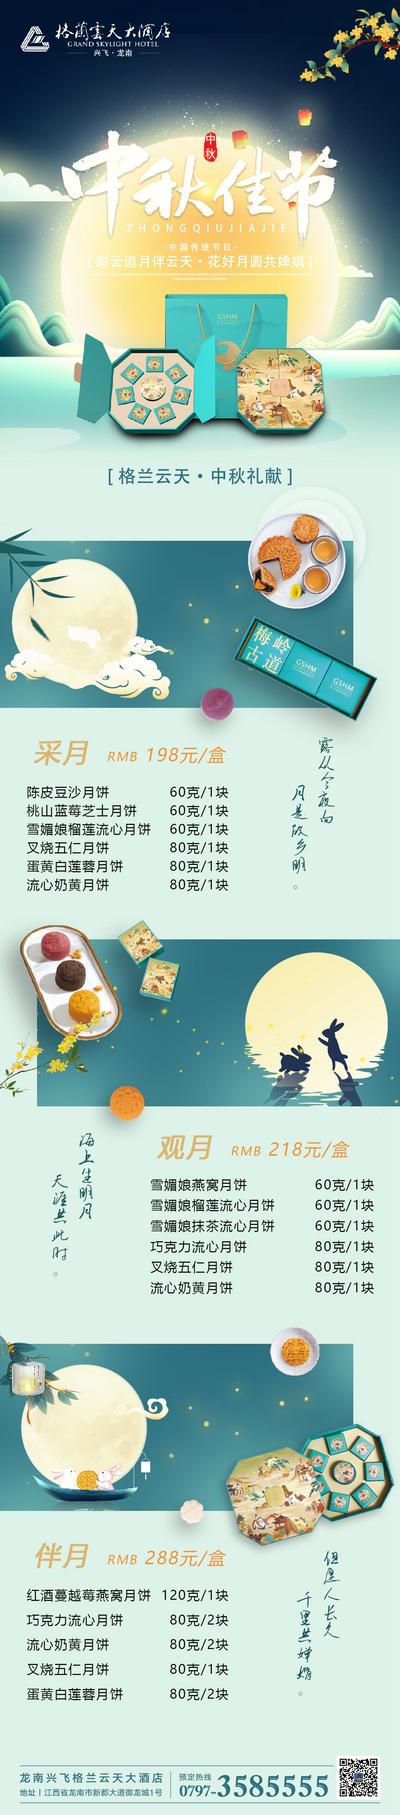 南门网 专题设计 长图 中国传统节日 中秋 月饼 高端 酒店 餐饮 团圆